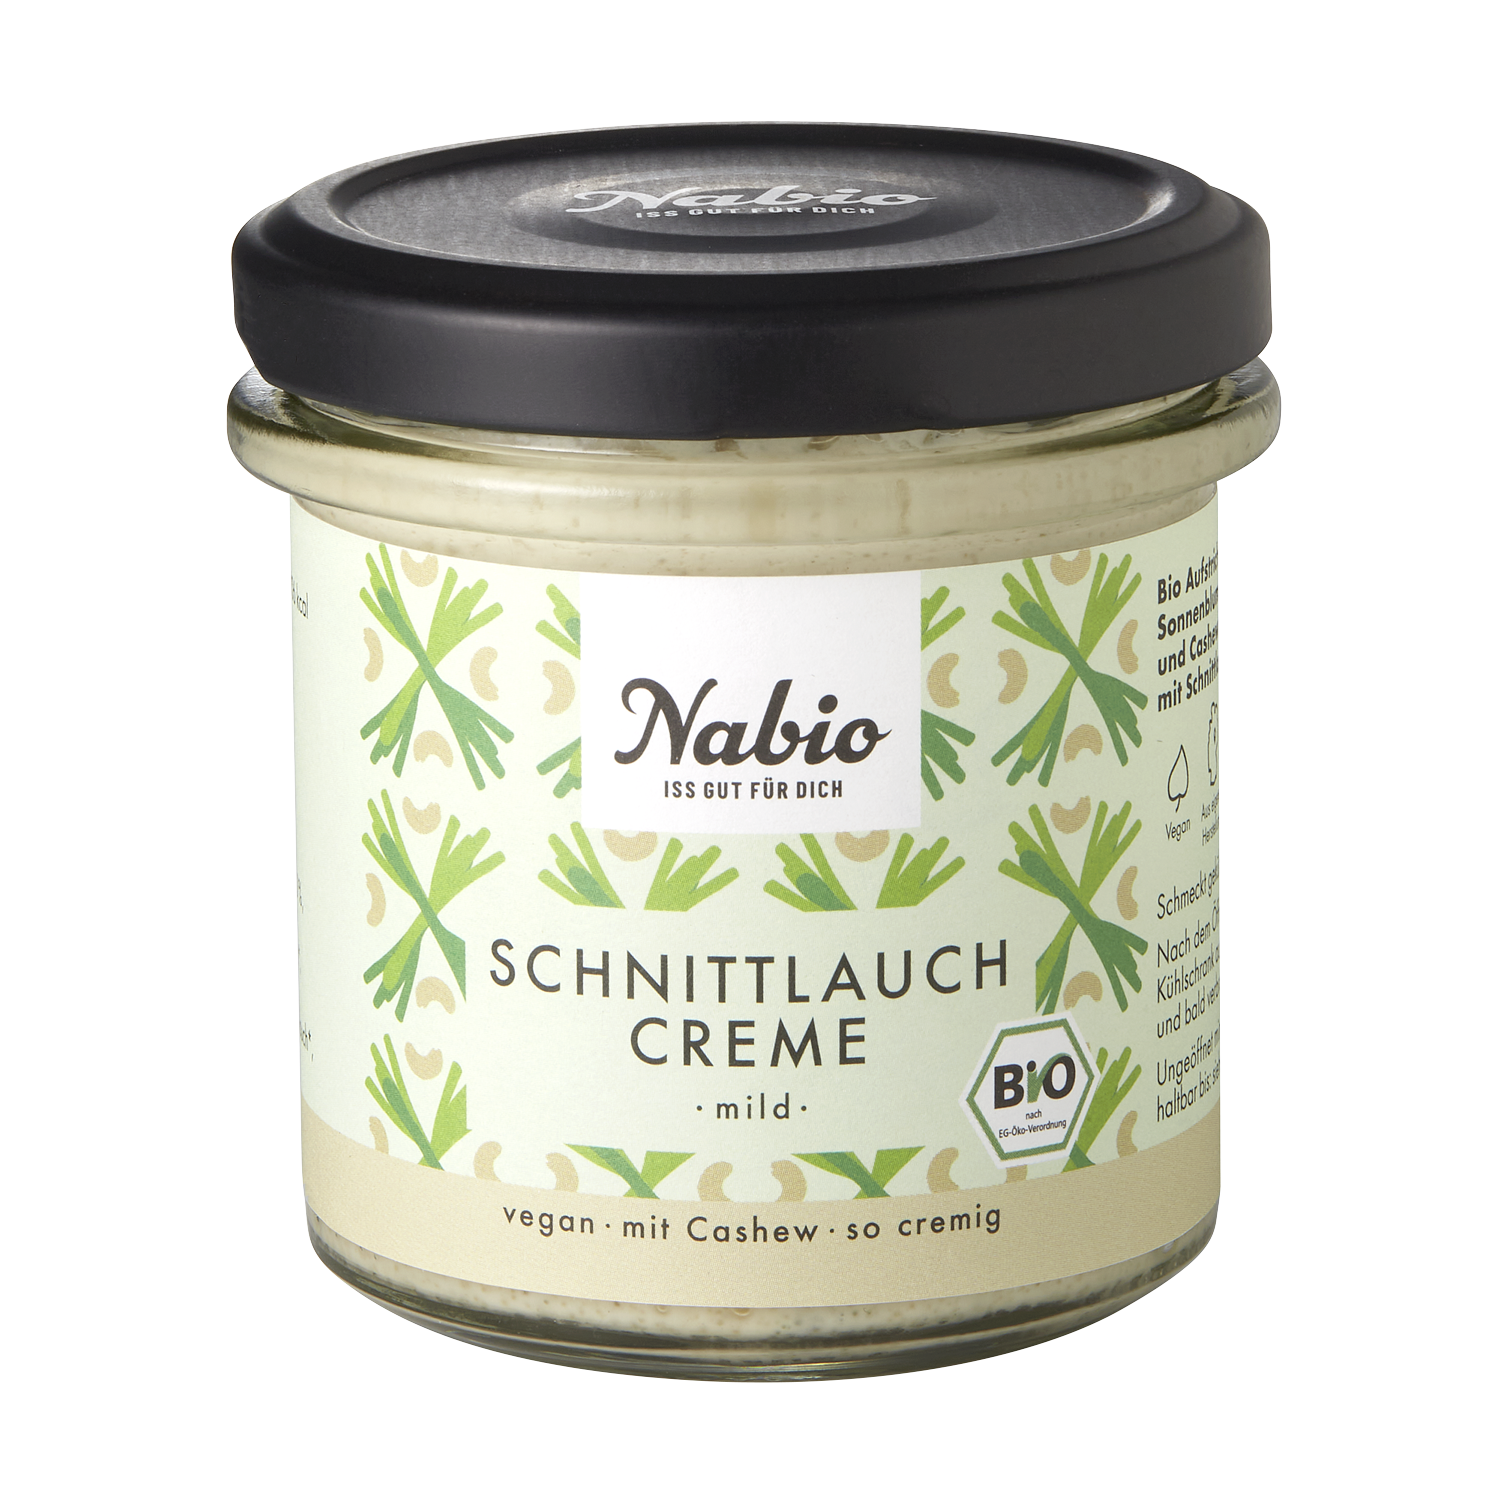 Schnittlauch Creme - Frischkäse A